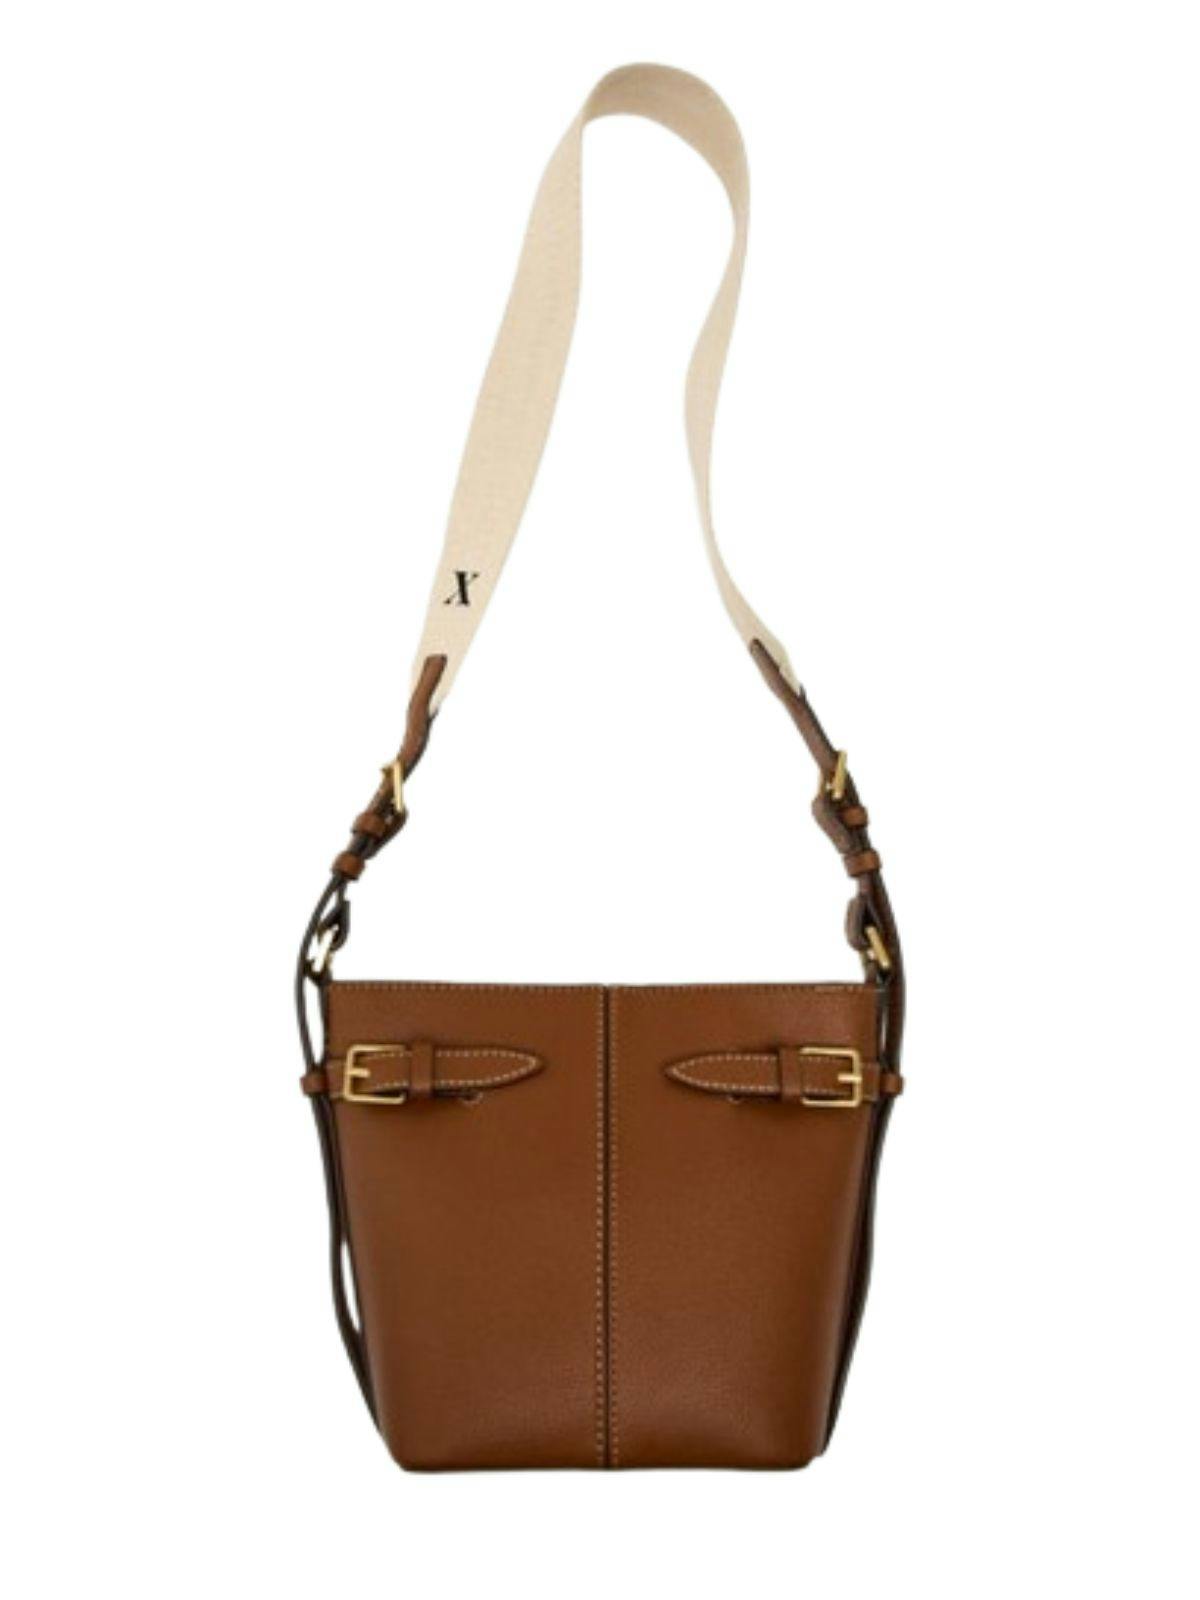 Zara Beaded Clutch Bags & Handbags for Women for sale | eBay